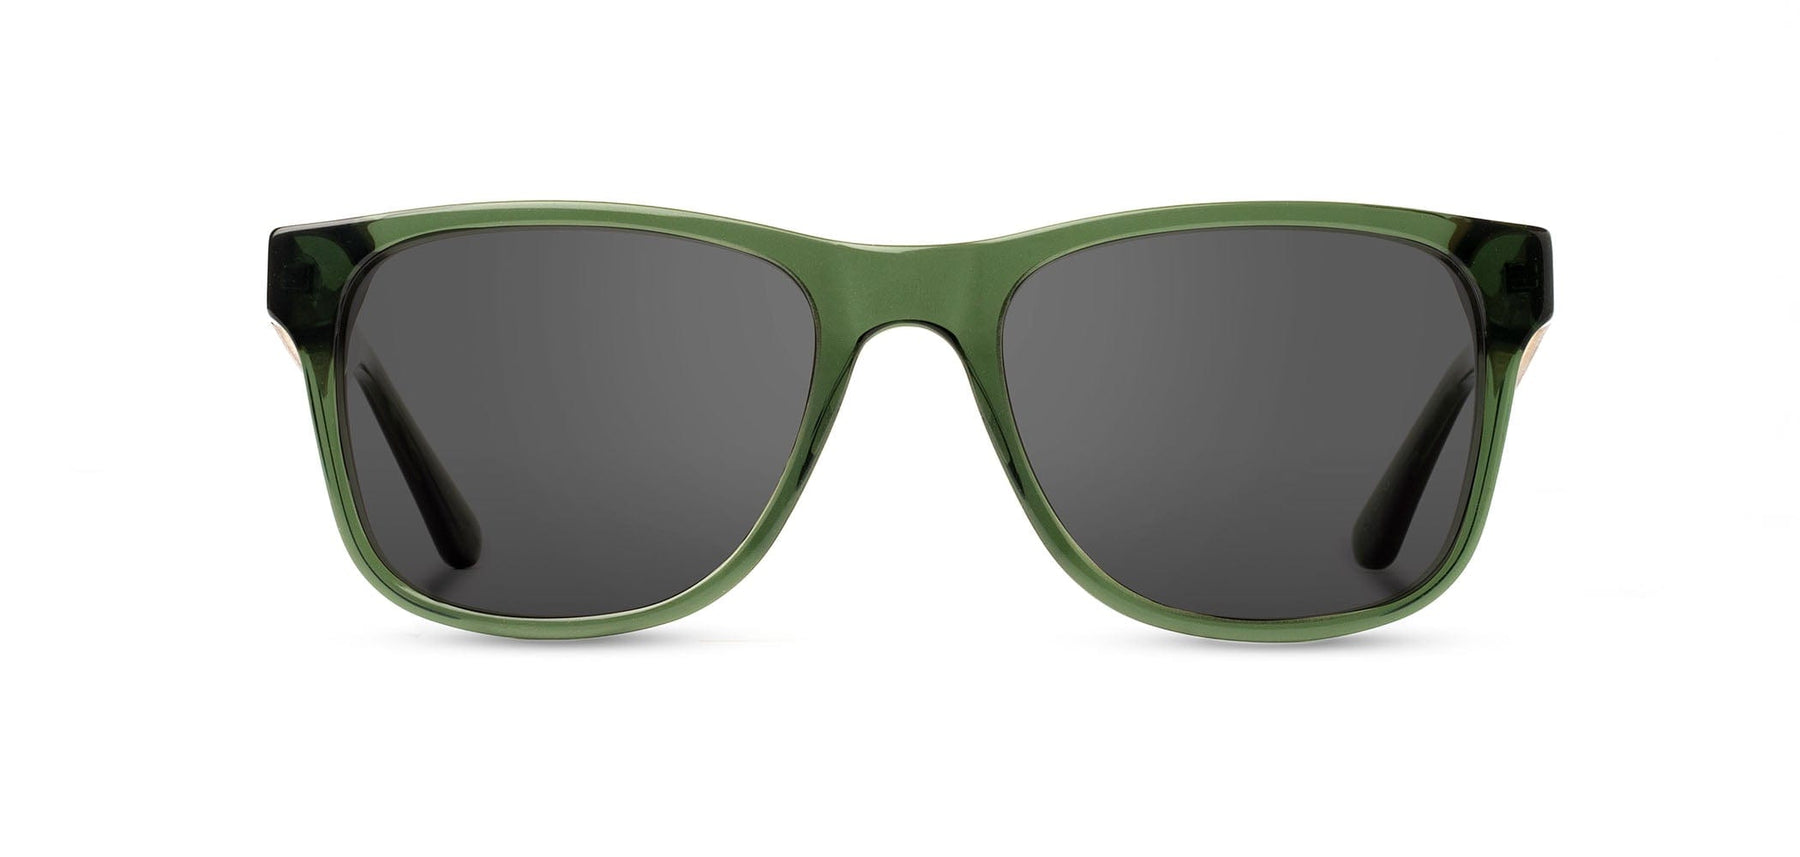 CAMP Trail Sunglasses - Sustainable Polarized Eyewear – Shwood Eyewear